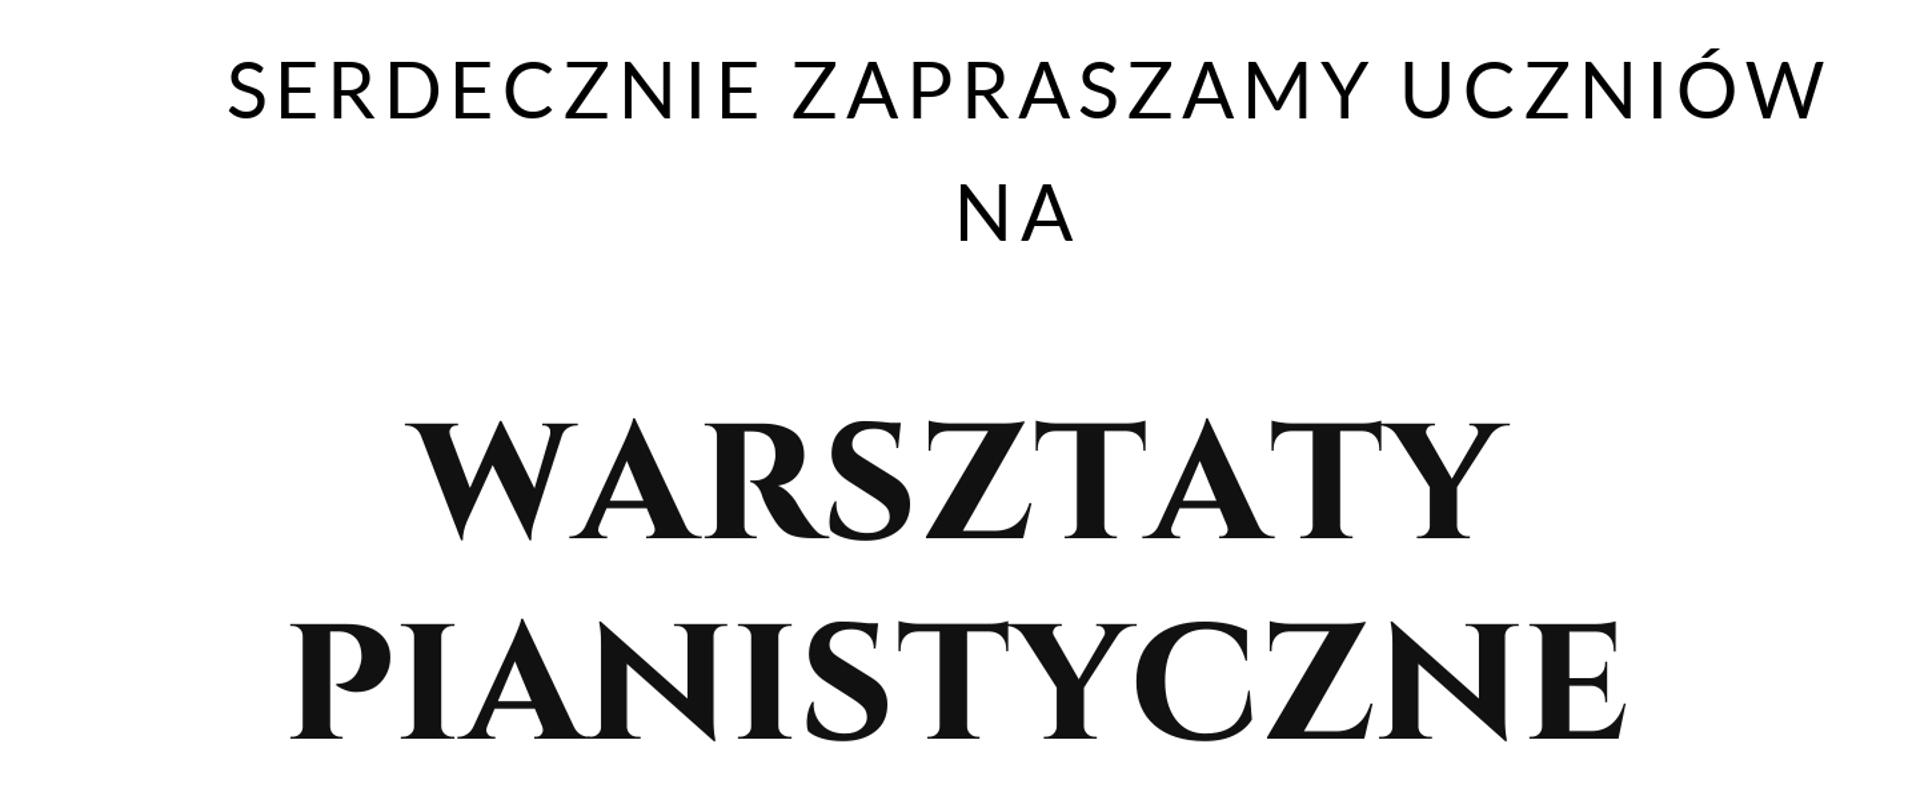 Plakat zapraszający na warsztaty pianistyczne, które odbędą się 18.05.2023 godz. 11:00. Warsztaty poprowadzi Krzysztof Książek. Plakat przedstawia czarno-biały fortepian i logo szkoły po prawej stronie.